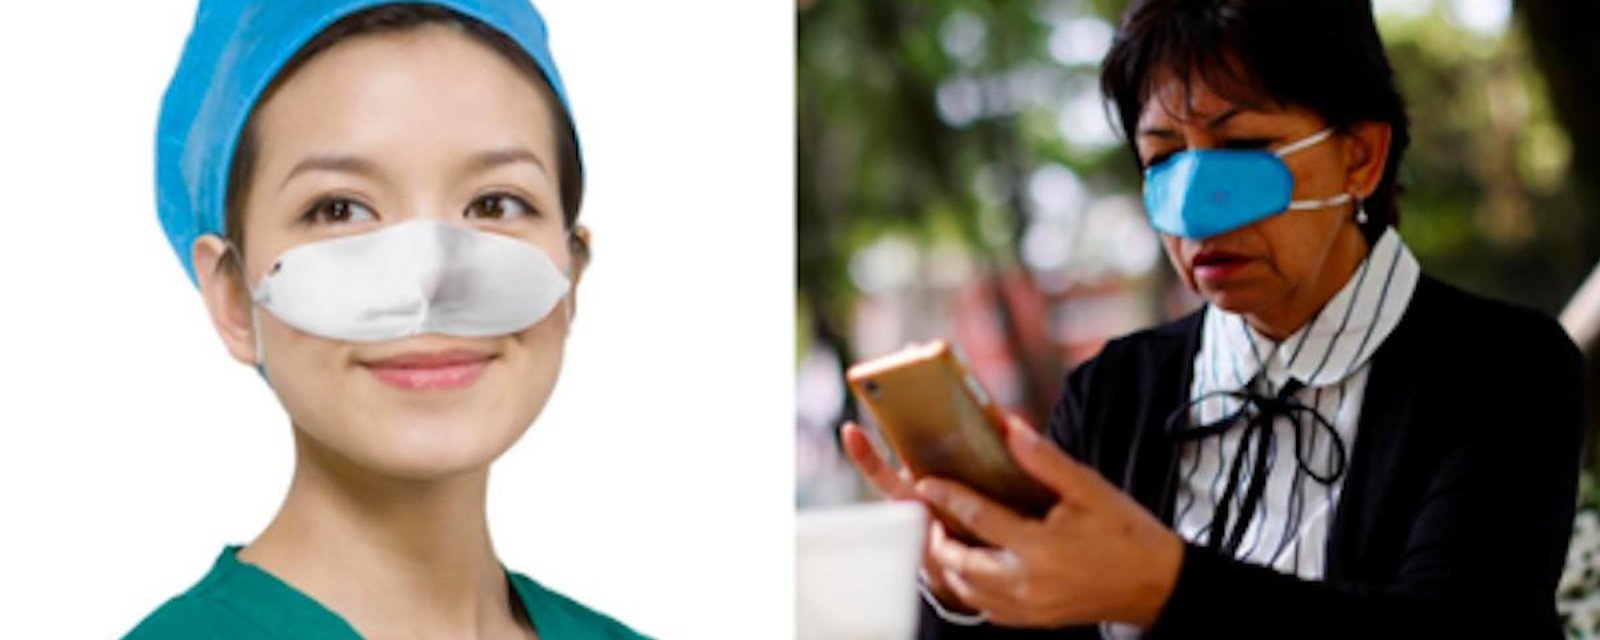 Covid-19: un masque de nez pour se protéger quand on mange